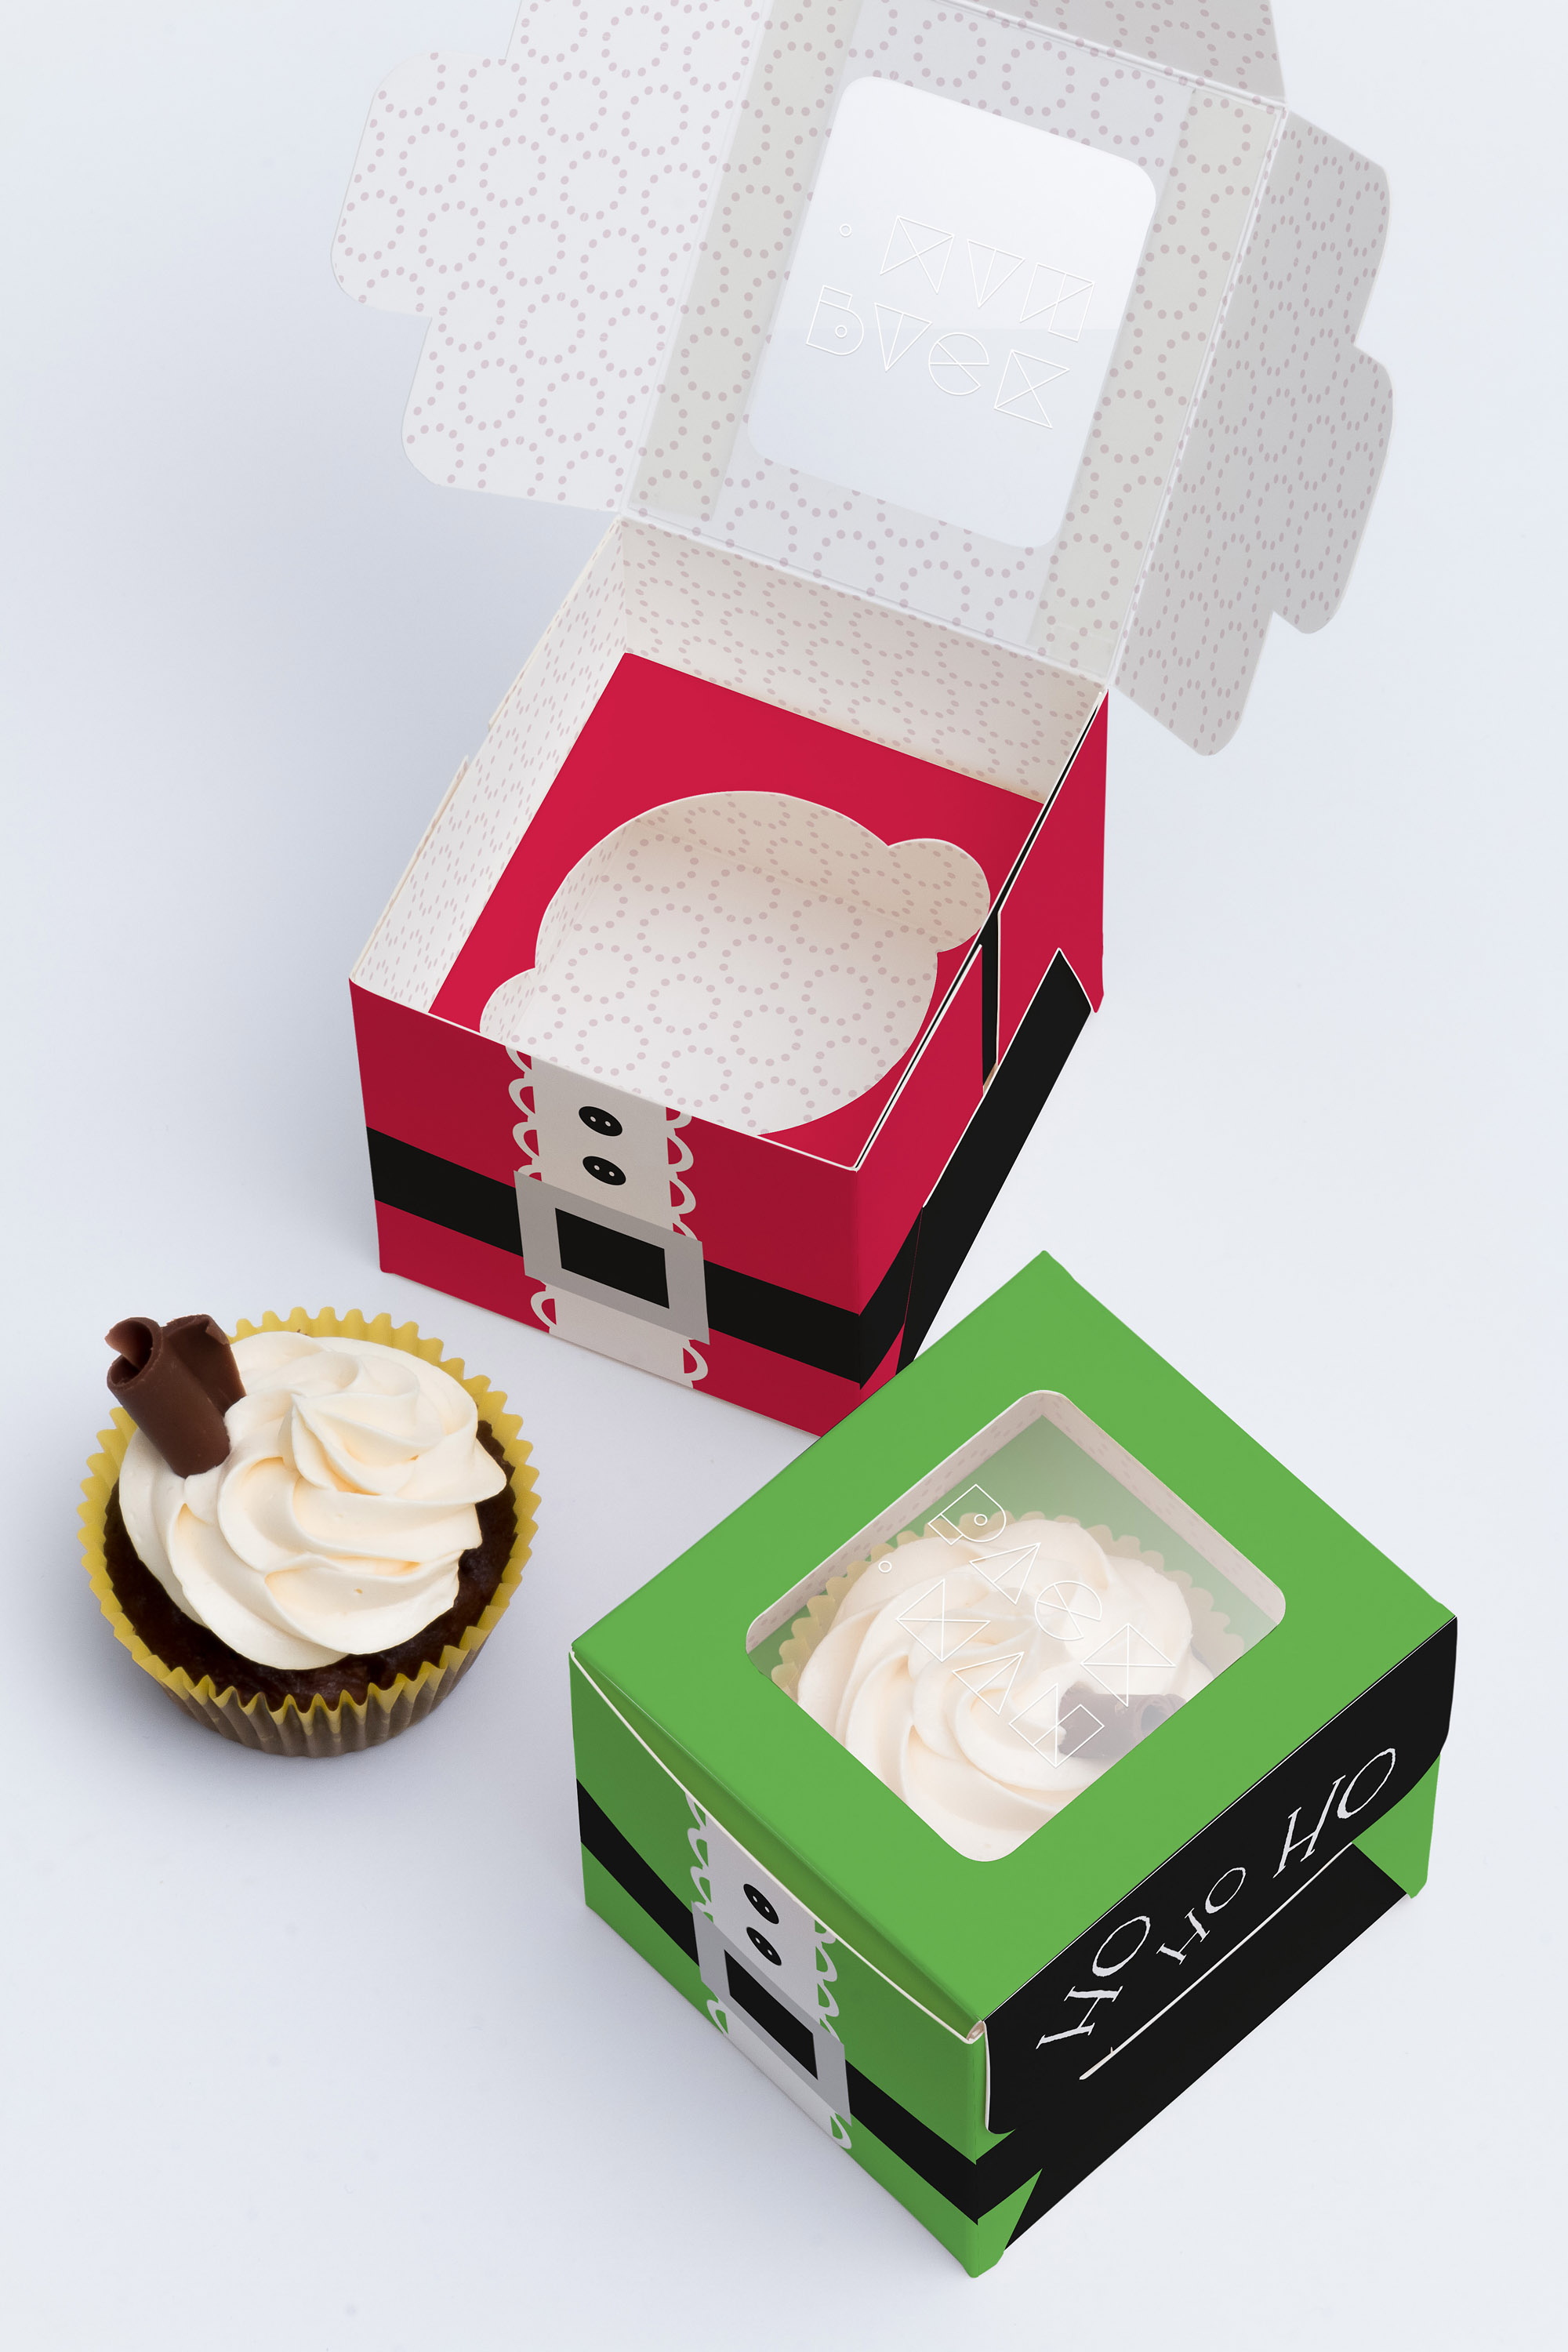 单只装纸杯蛋糕甜点包装盒设计效果图样机01 One Cupcake Box Mockup 01插图(1)